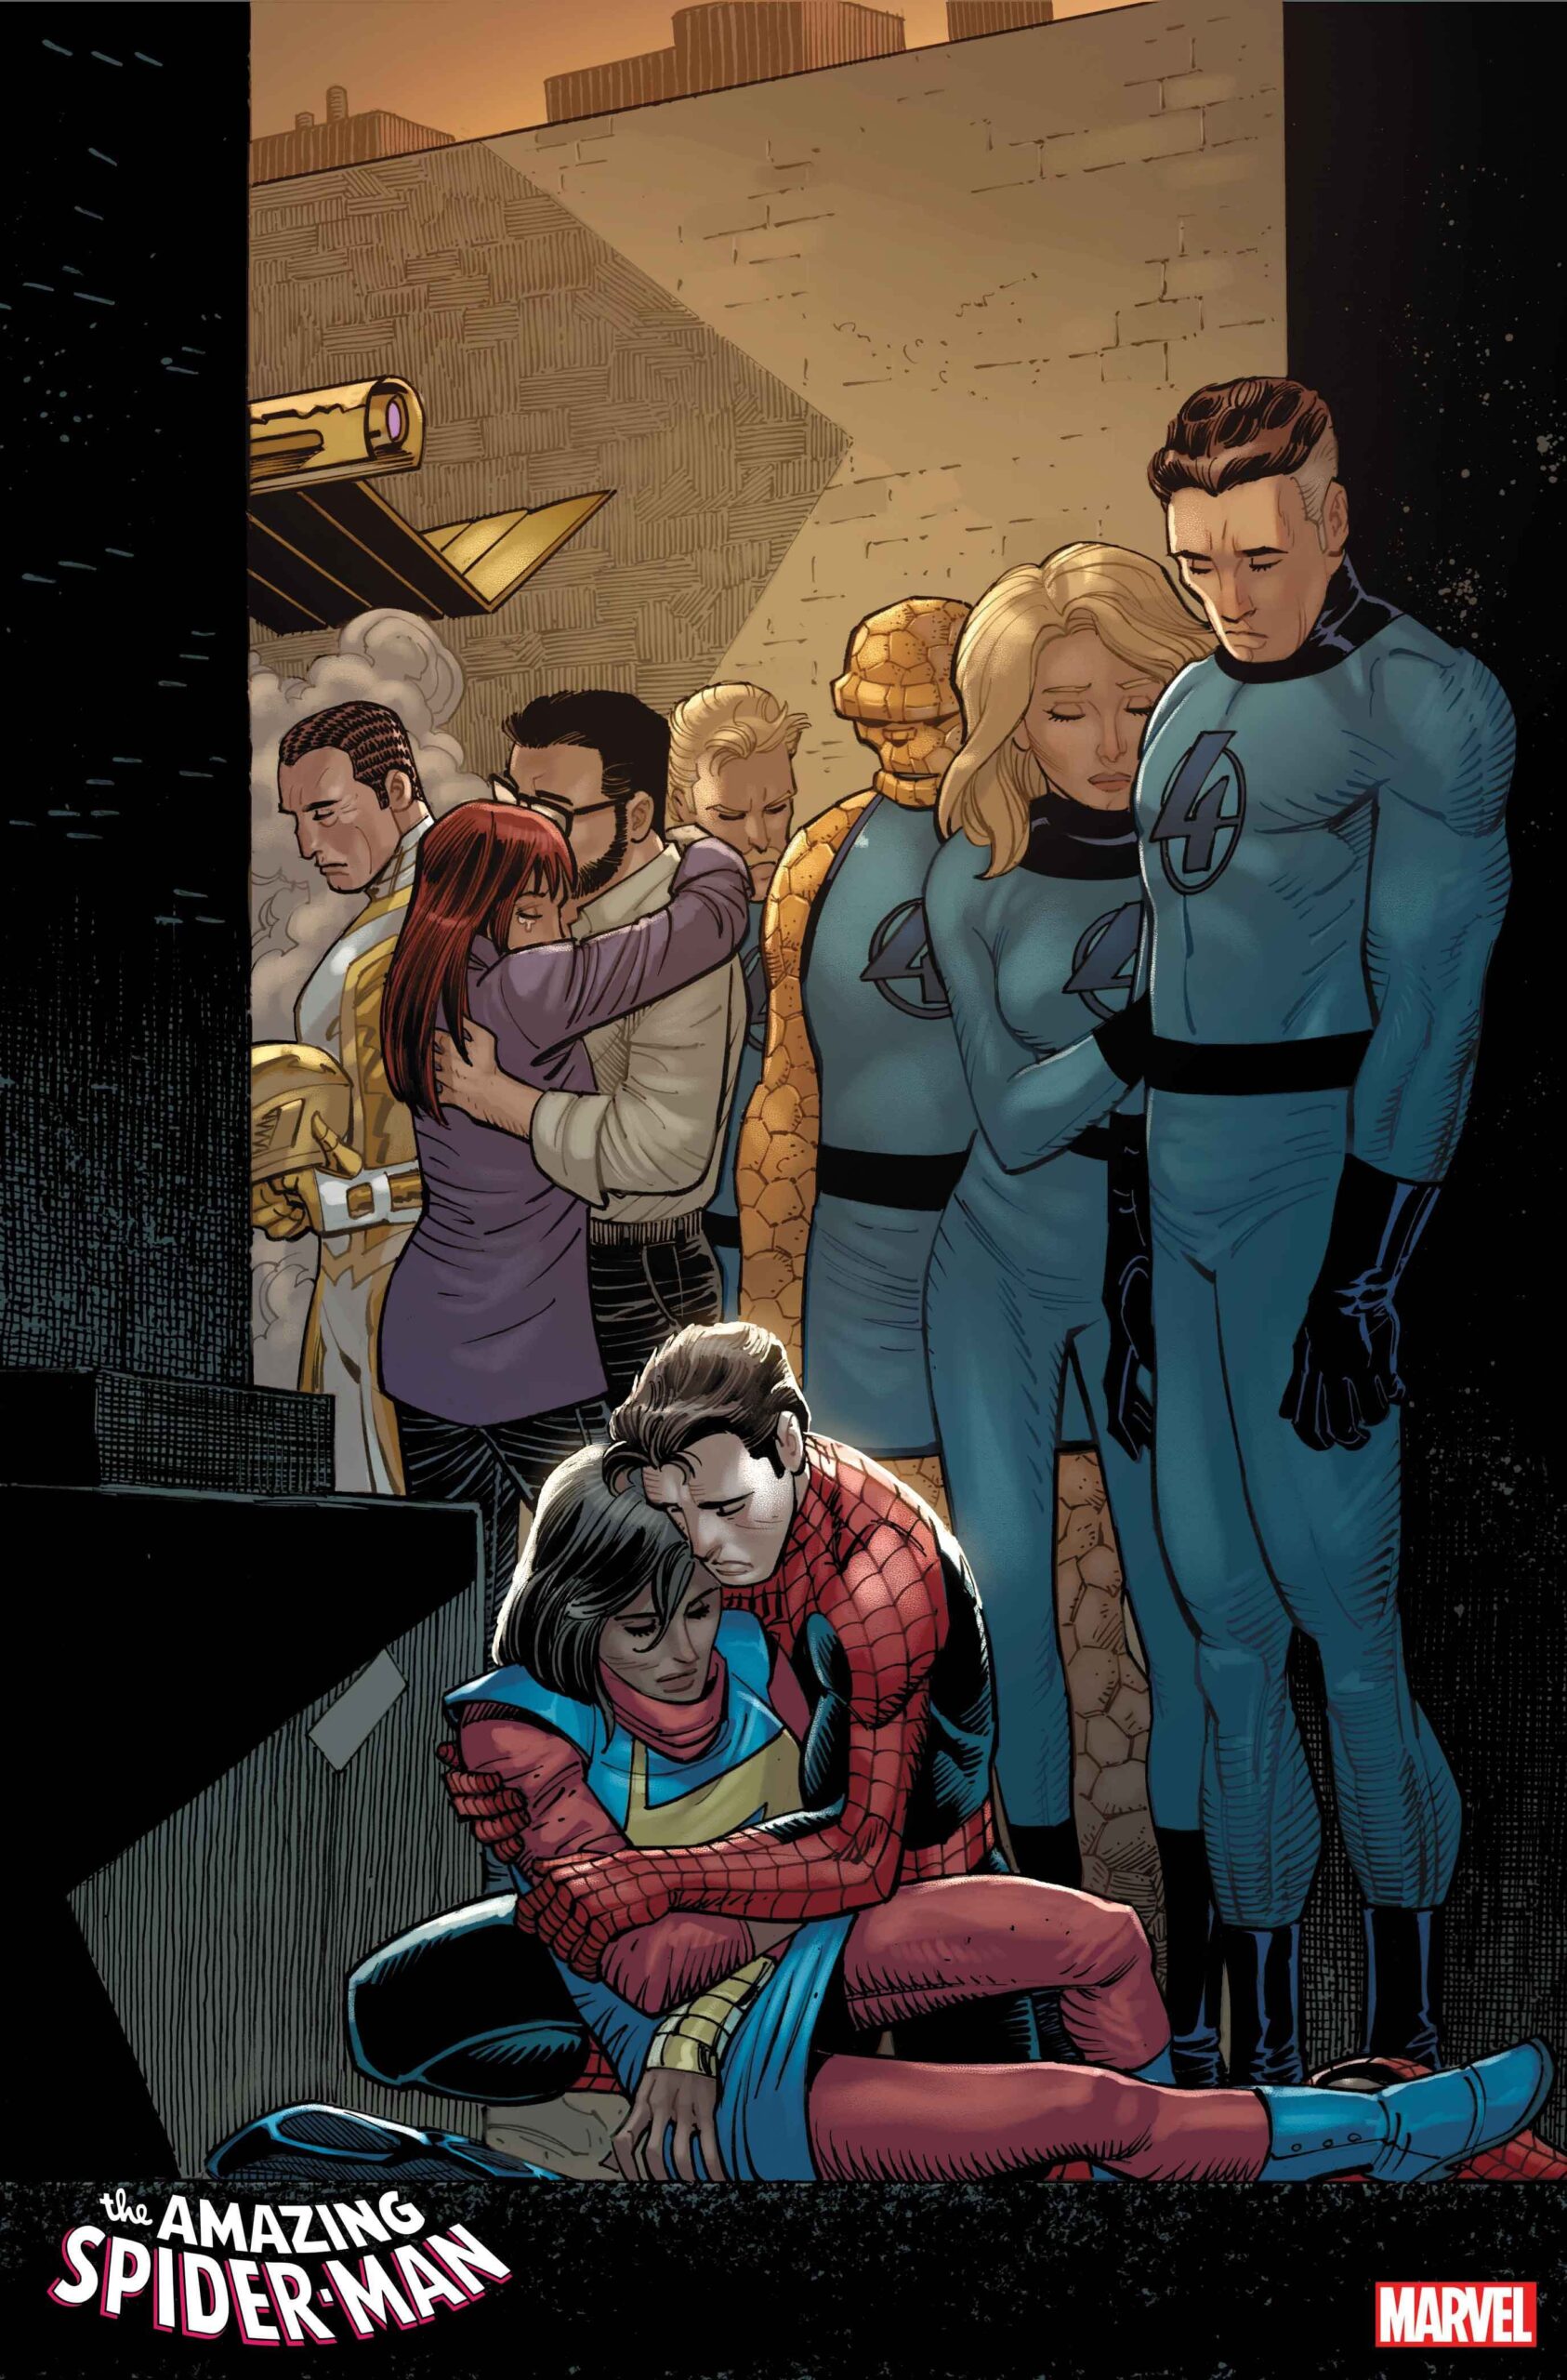 A Morte de Ms Marvel - Amazing Spider-Man #26 - Marvel Comics - Preview 4 - Blog Farofeiros